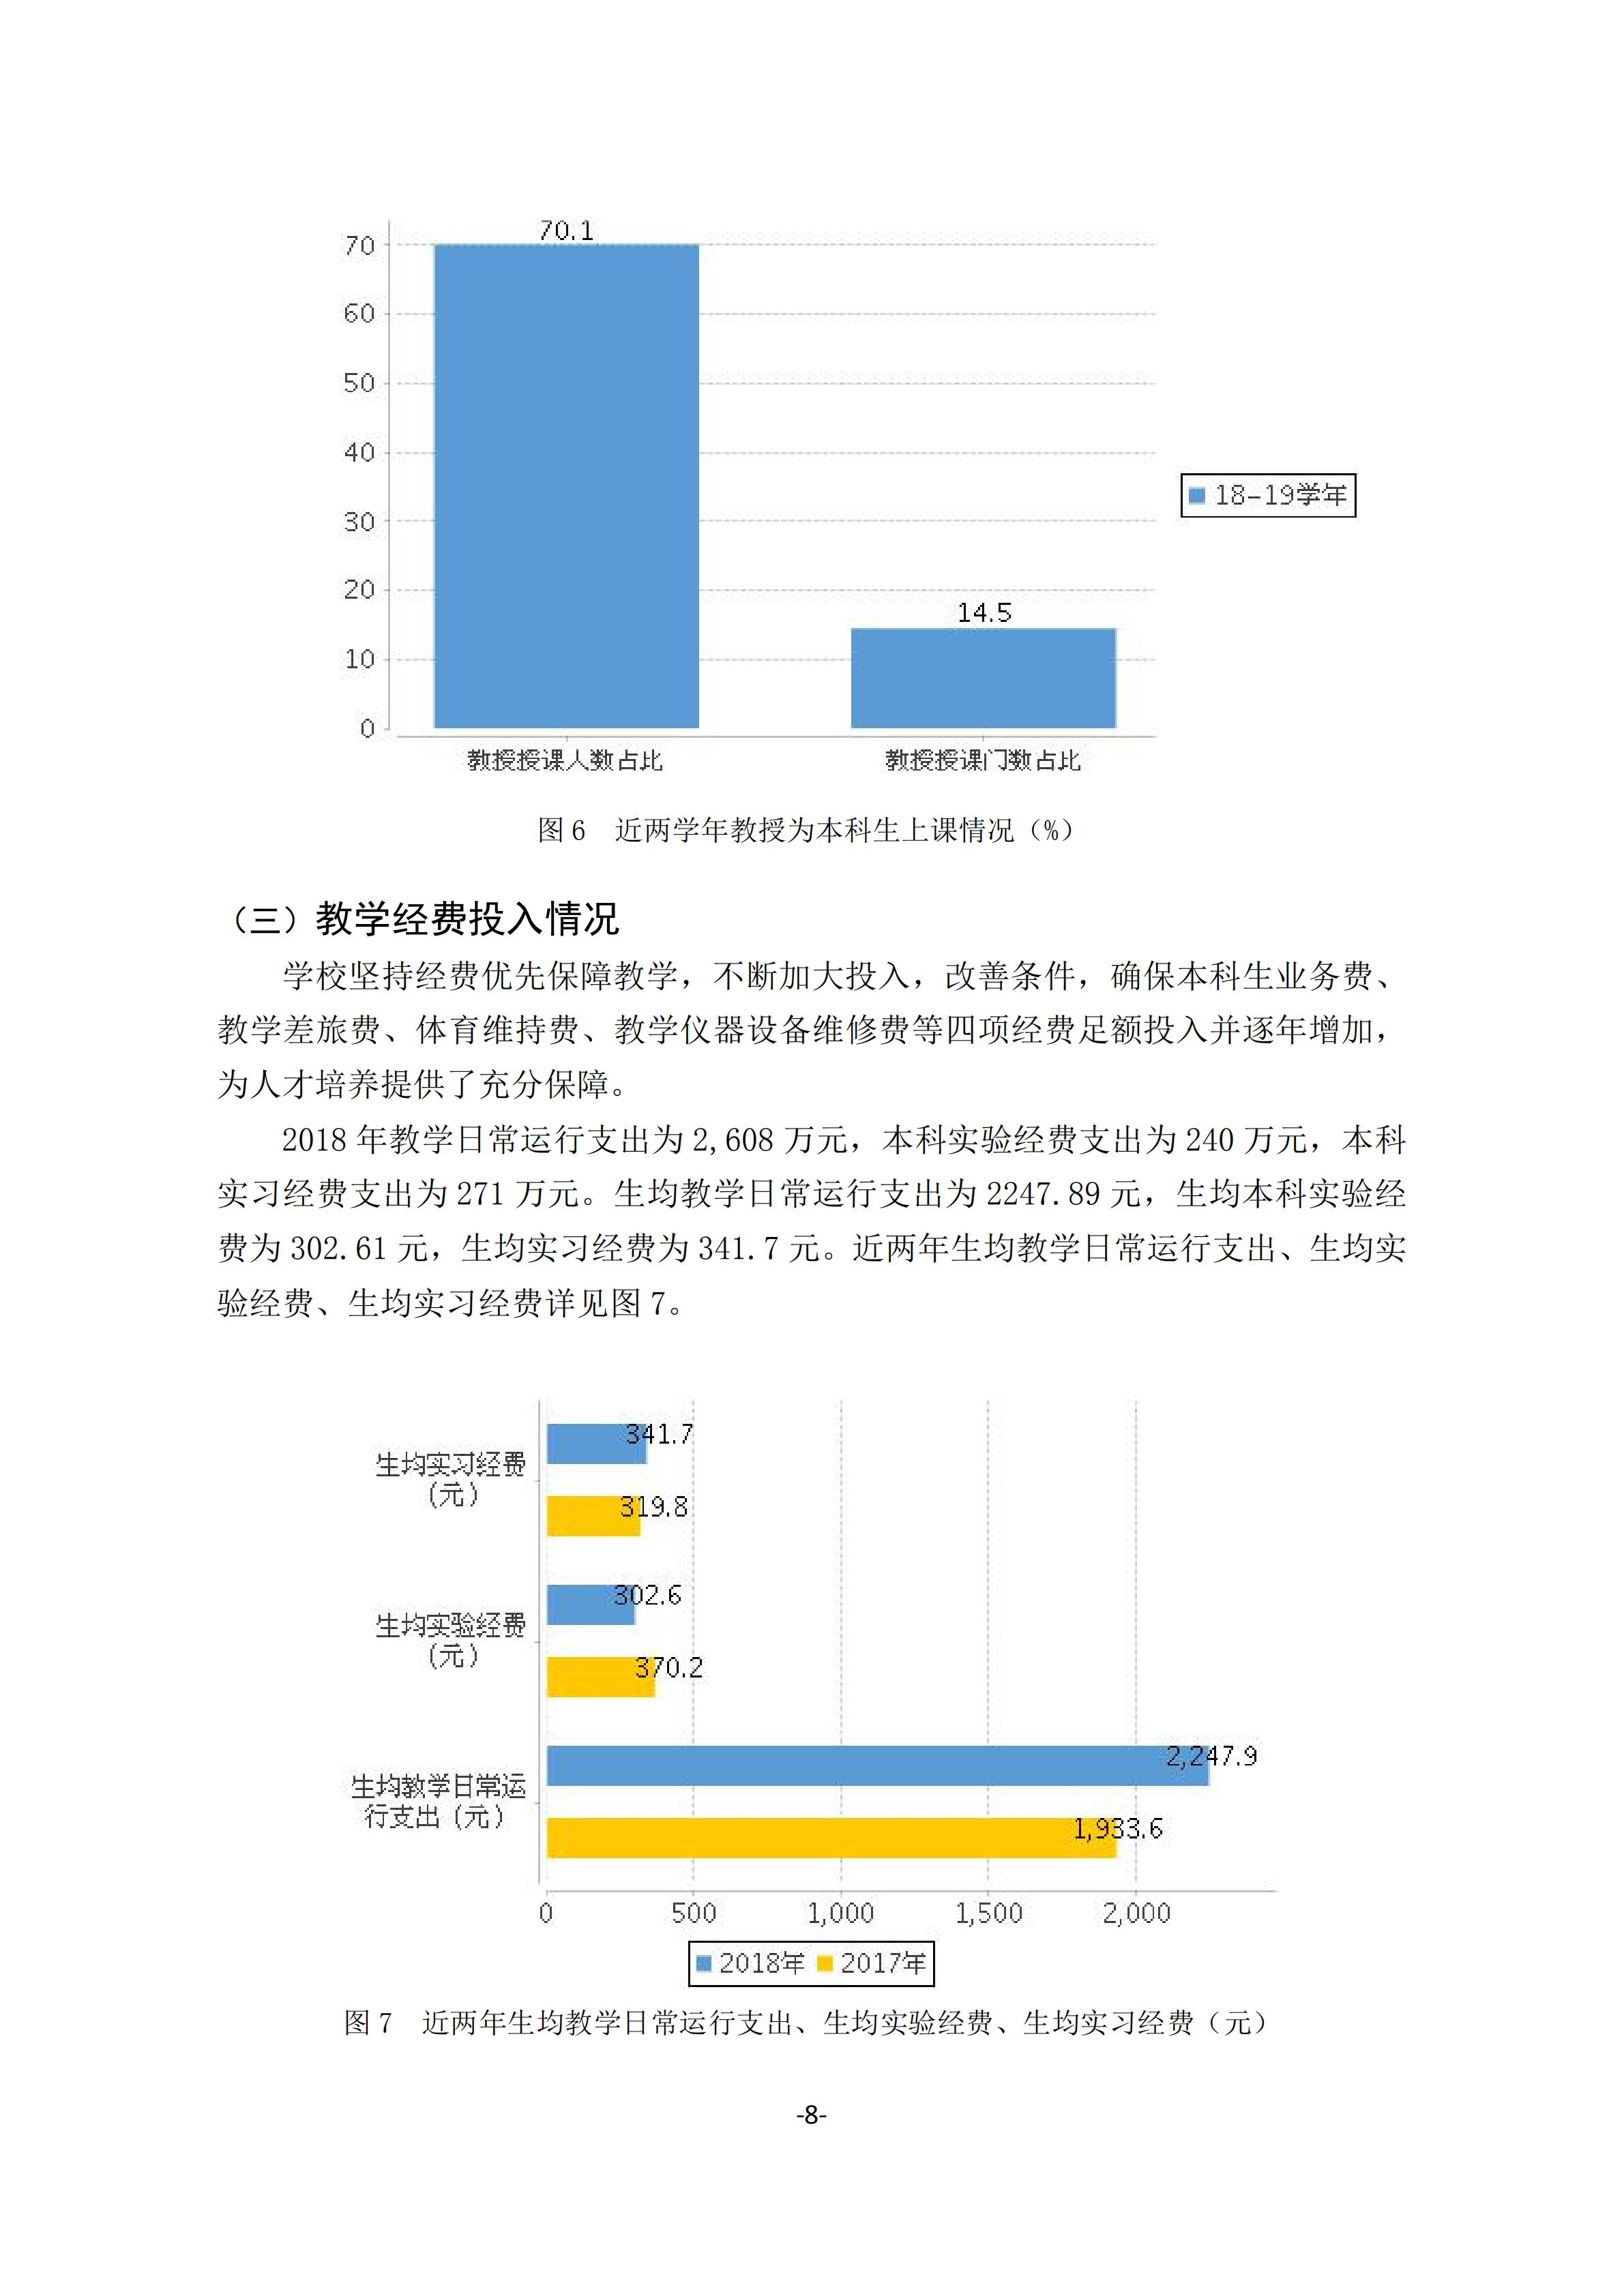 1.湖南交通工程学院2018-2019学年本科教学质量报告_07.jpg